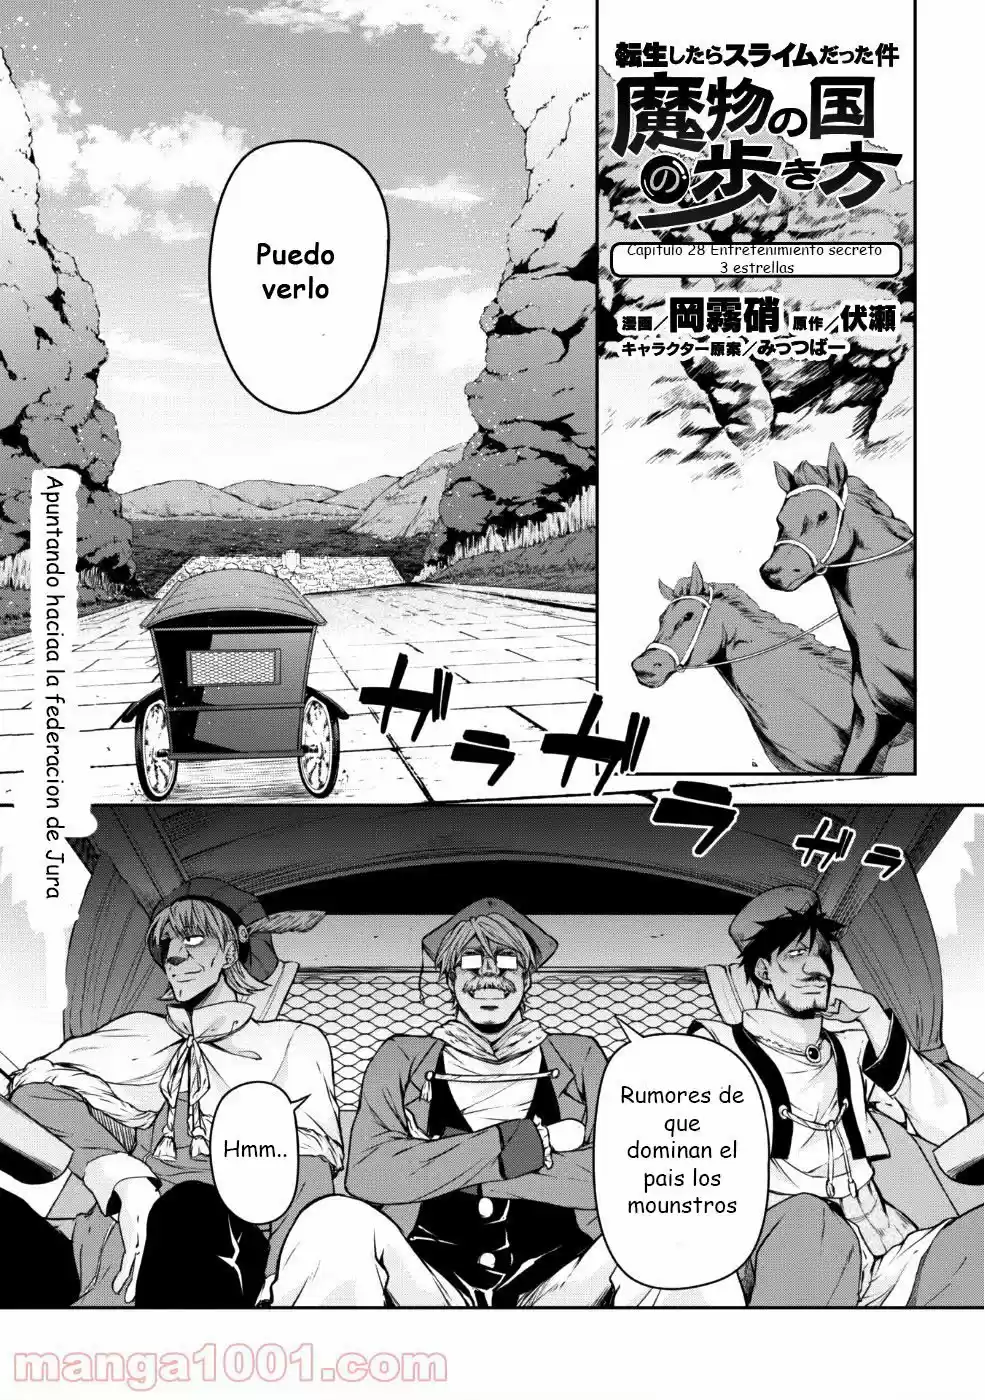 Tensei Shitara Slime Datta Ken: Mabutsu No Kuni No Arukikata: Chapter 27 - Page 1